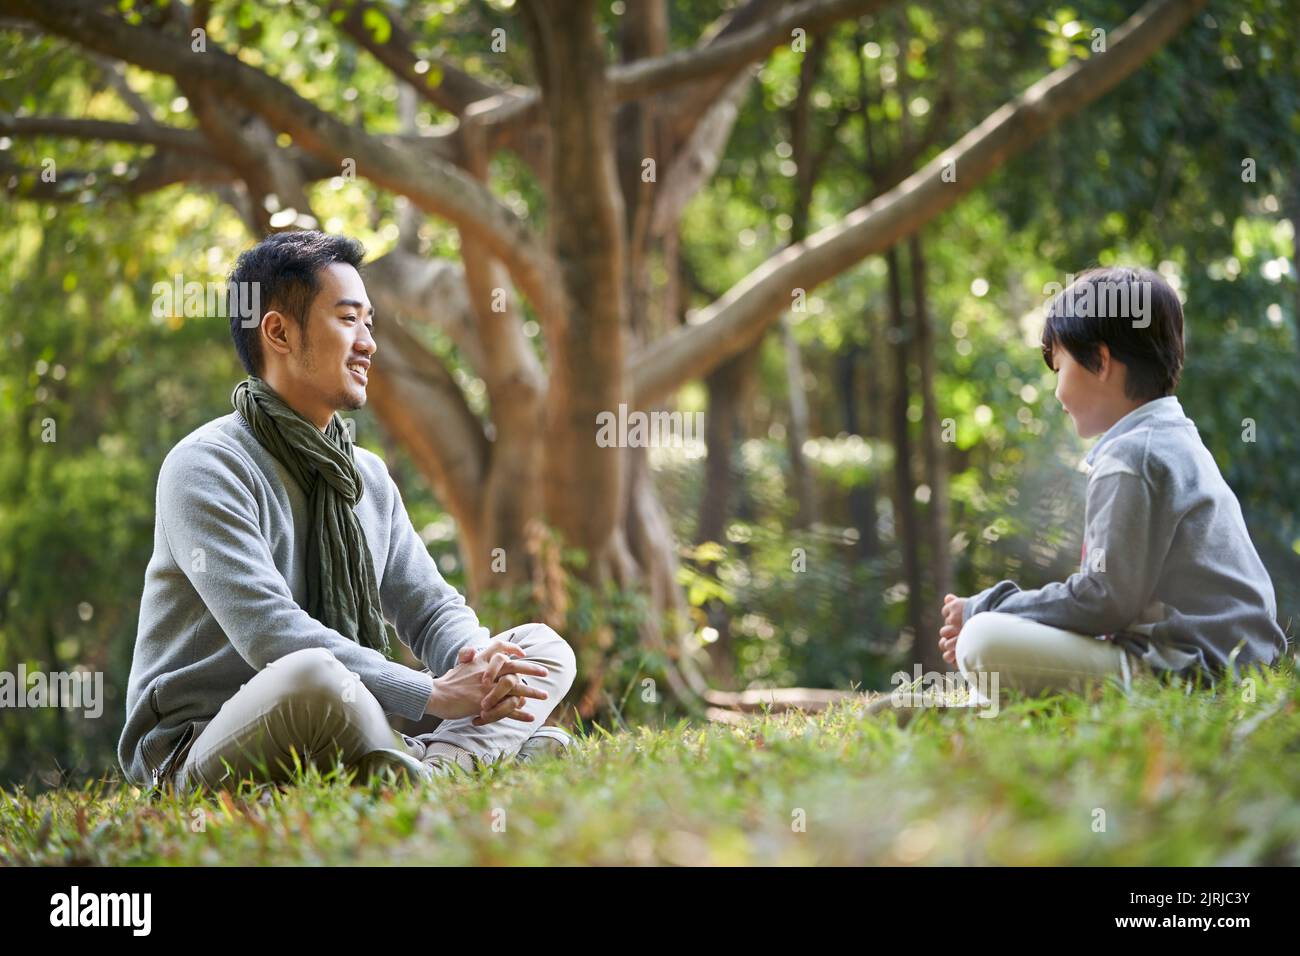 padre asiático e hijo sentado en el césped teniendo una agradable conversación al aire libre en el parque Foto de stock